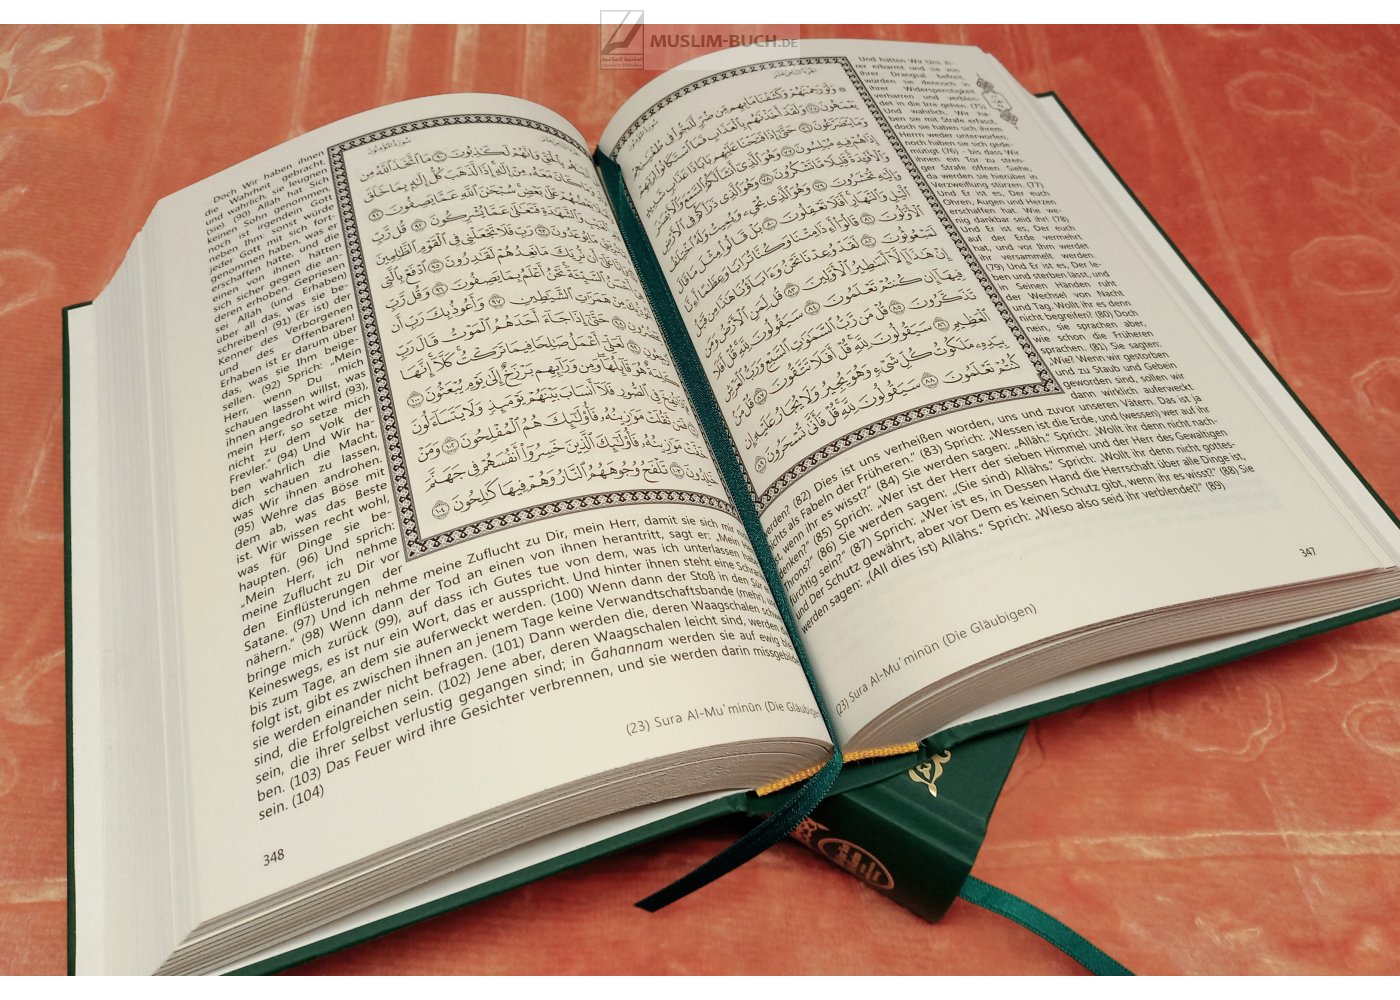 Al-Qur'an Al-Karim und seine ungefähre deutsche Bedeutung